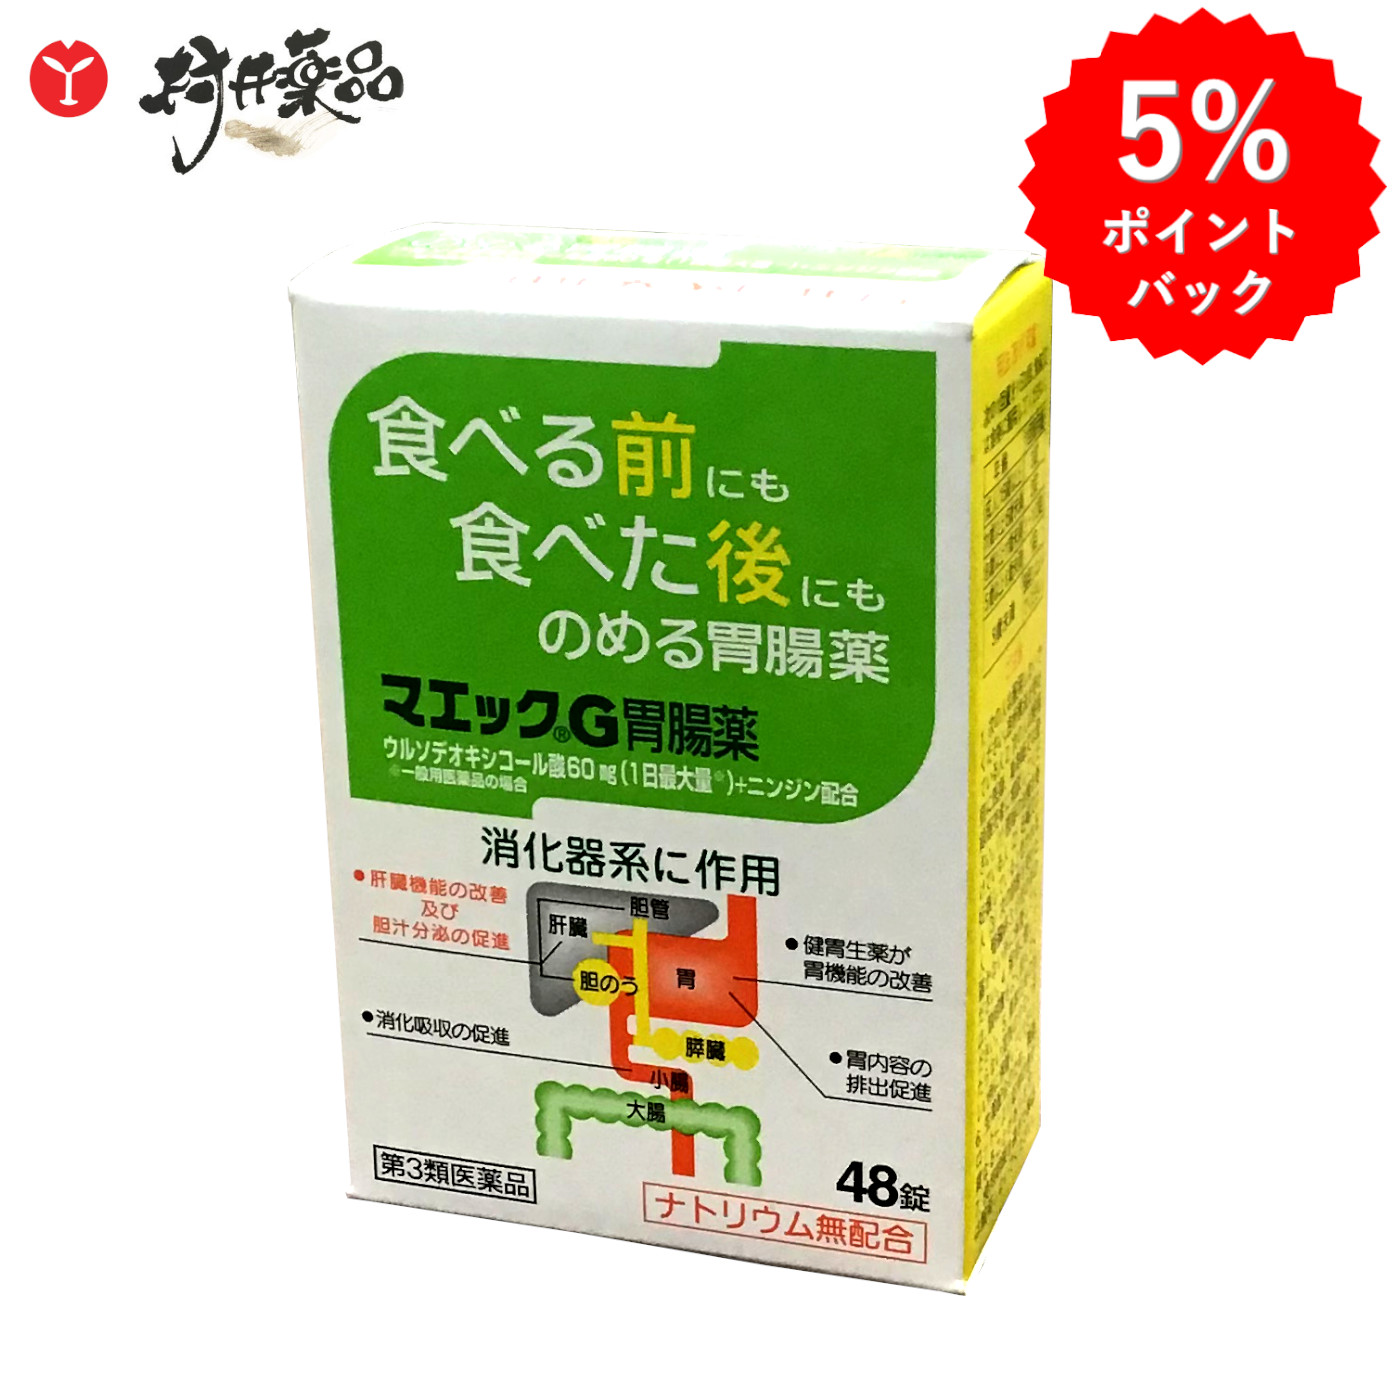  マエック G 胃腸薬 48錠 ウルソデオキシコール 配合 ジャパンメディック